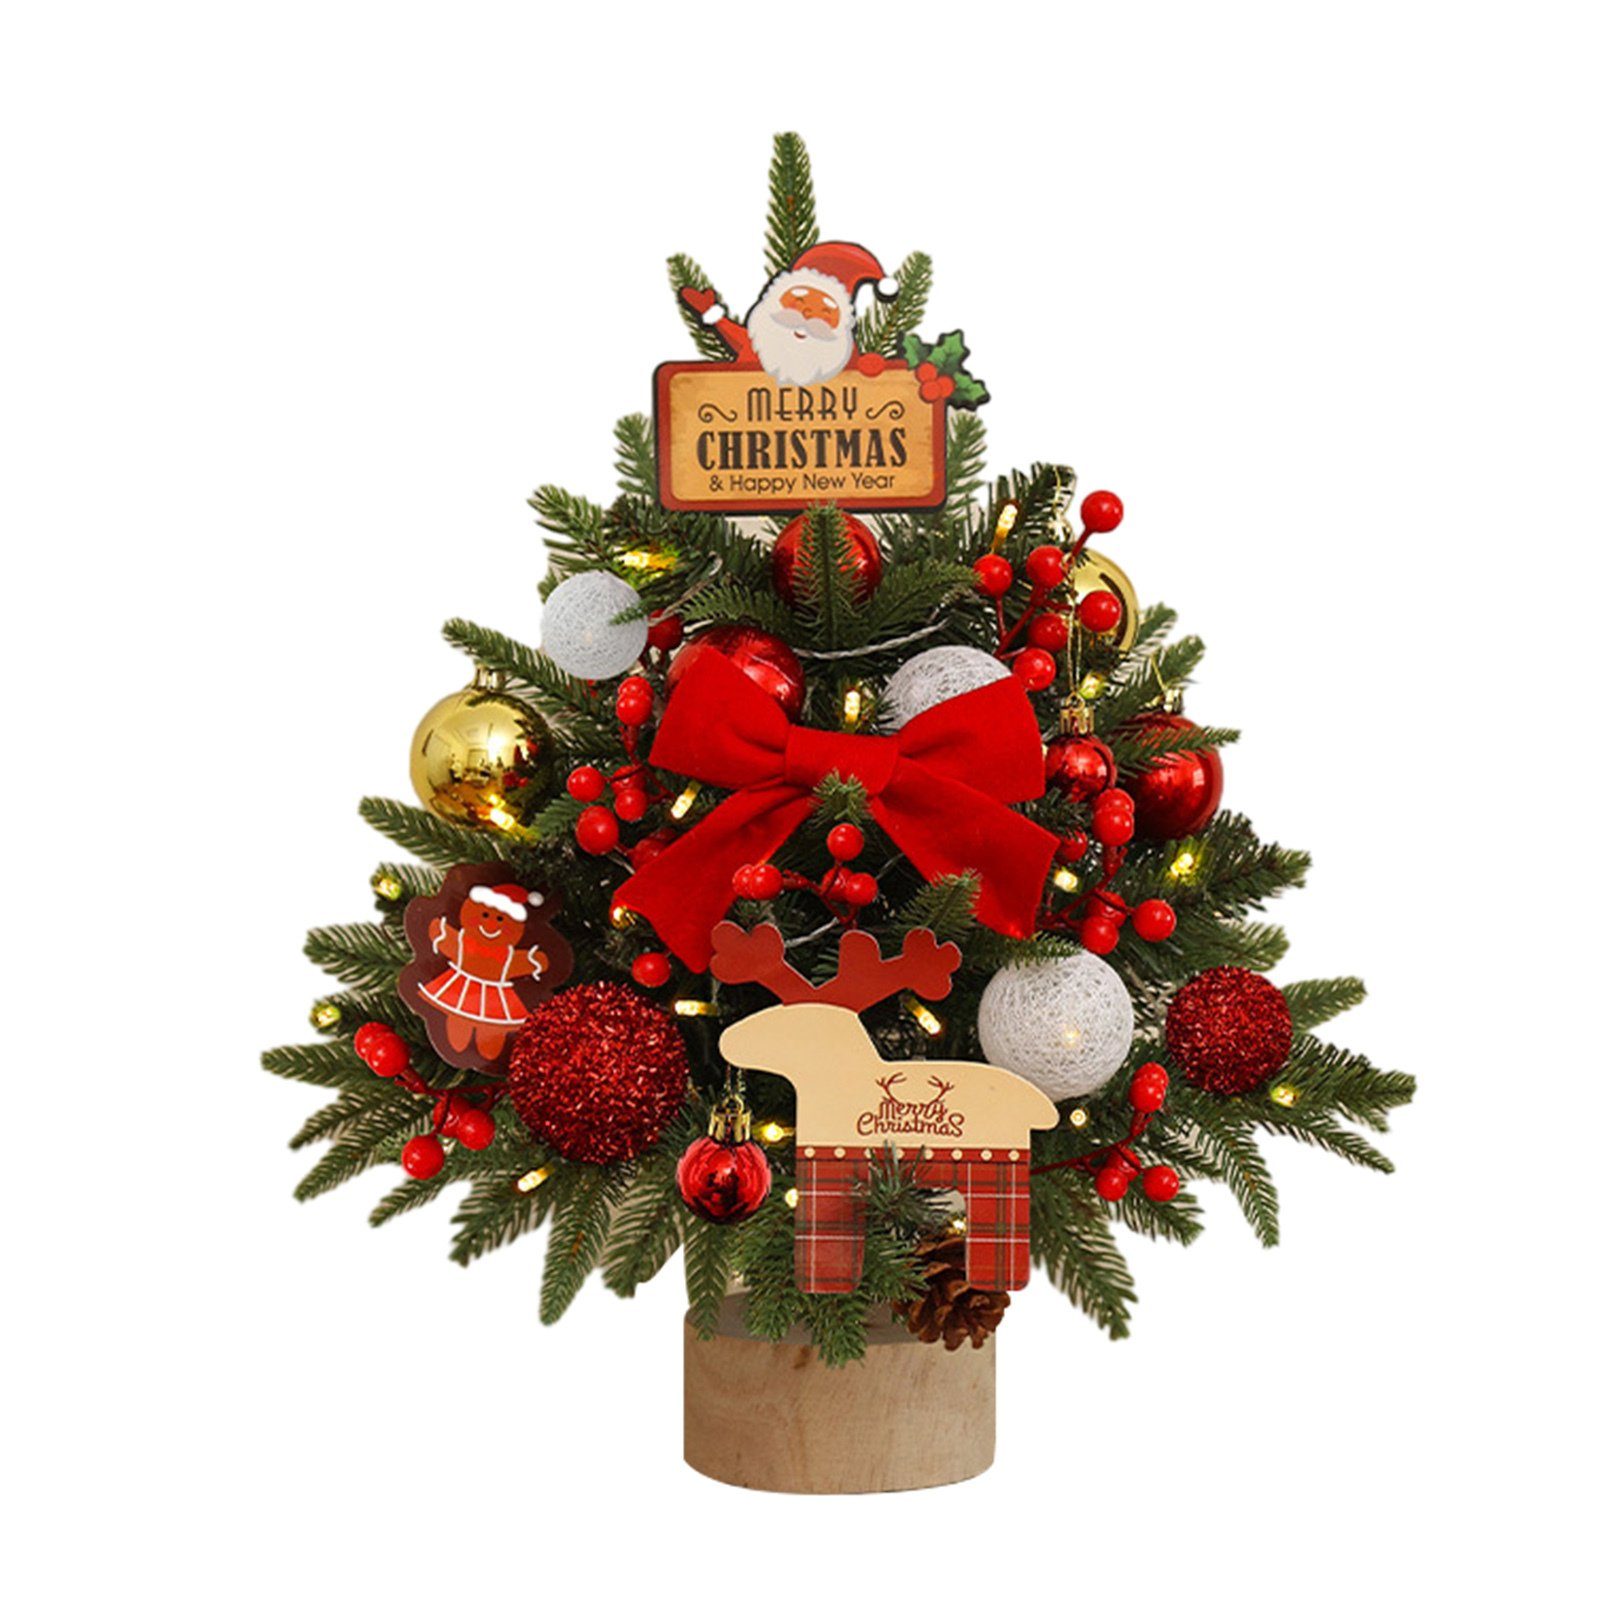 Blusmart Künstlicher Weihnachtsbaum Kleiner 45 Cm Großer Tisch-Weihnachtsbaum Mit Mehrfarbigem Dekor, Künstlicher Weihnachtsbaum cherry red